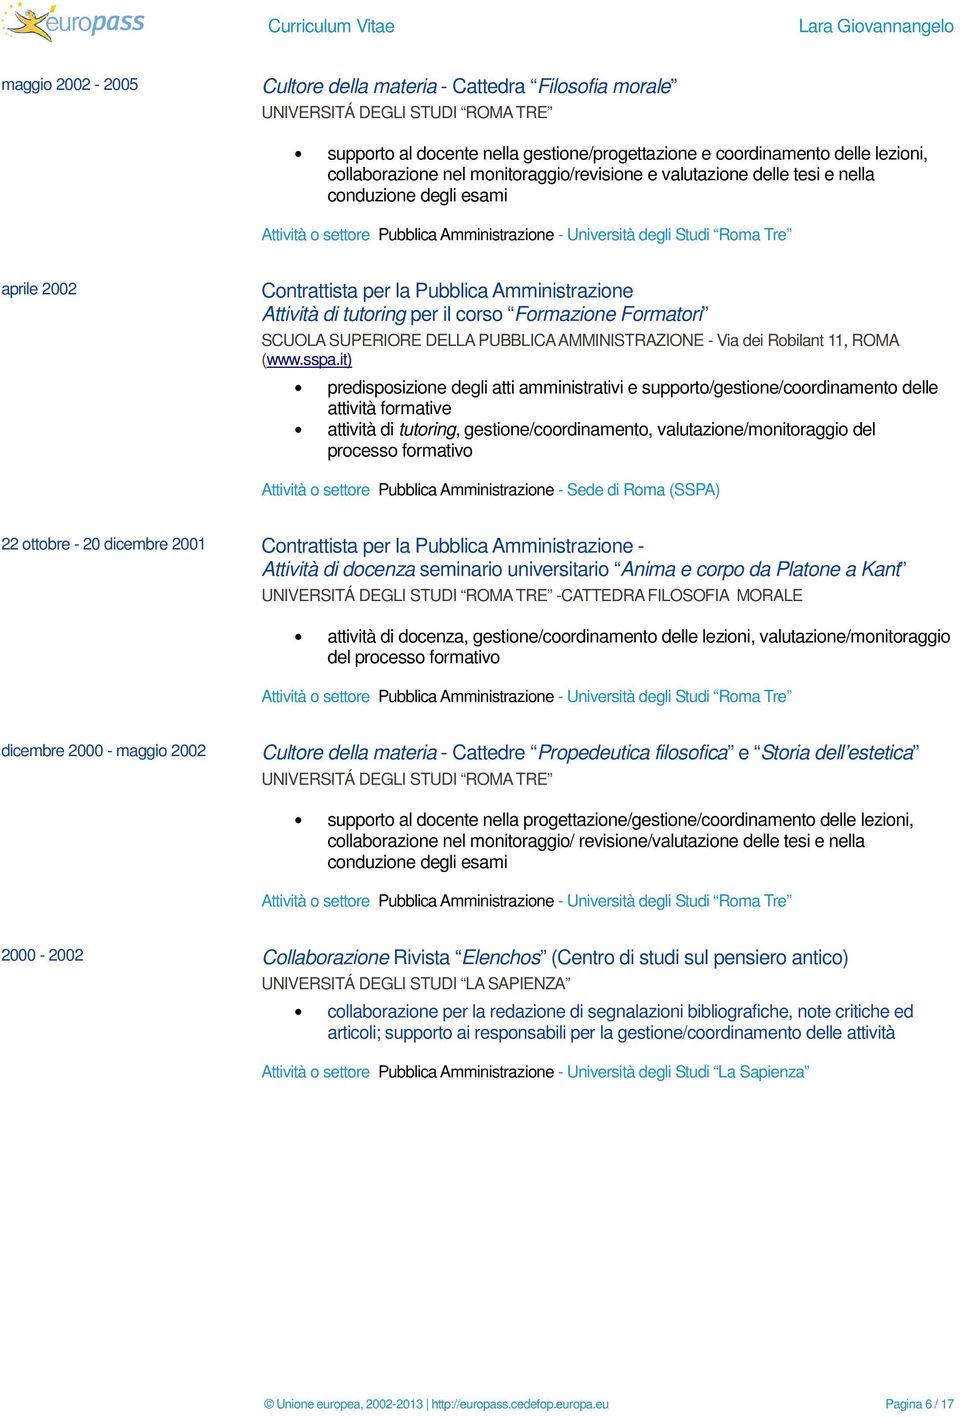 tutoring, gestione/coordinamento, valutazione/monitoraggio del processo formativo 22 ottobre - 20 dicembre 2001 - Attività di docenza seminario universitario Anima e corpo da Platone a Kant